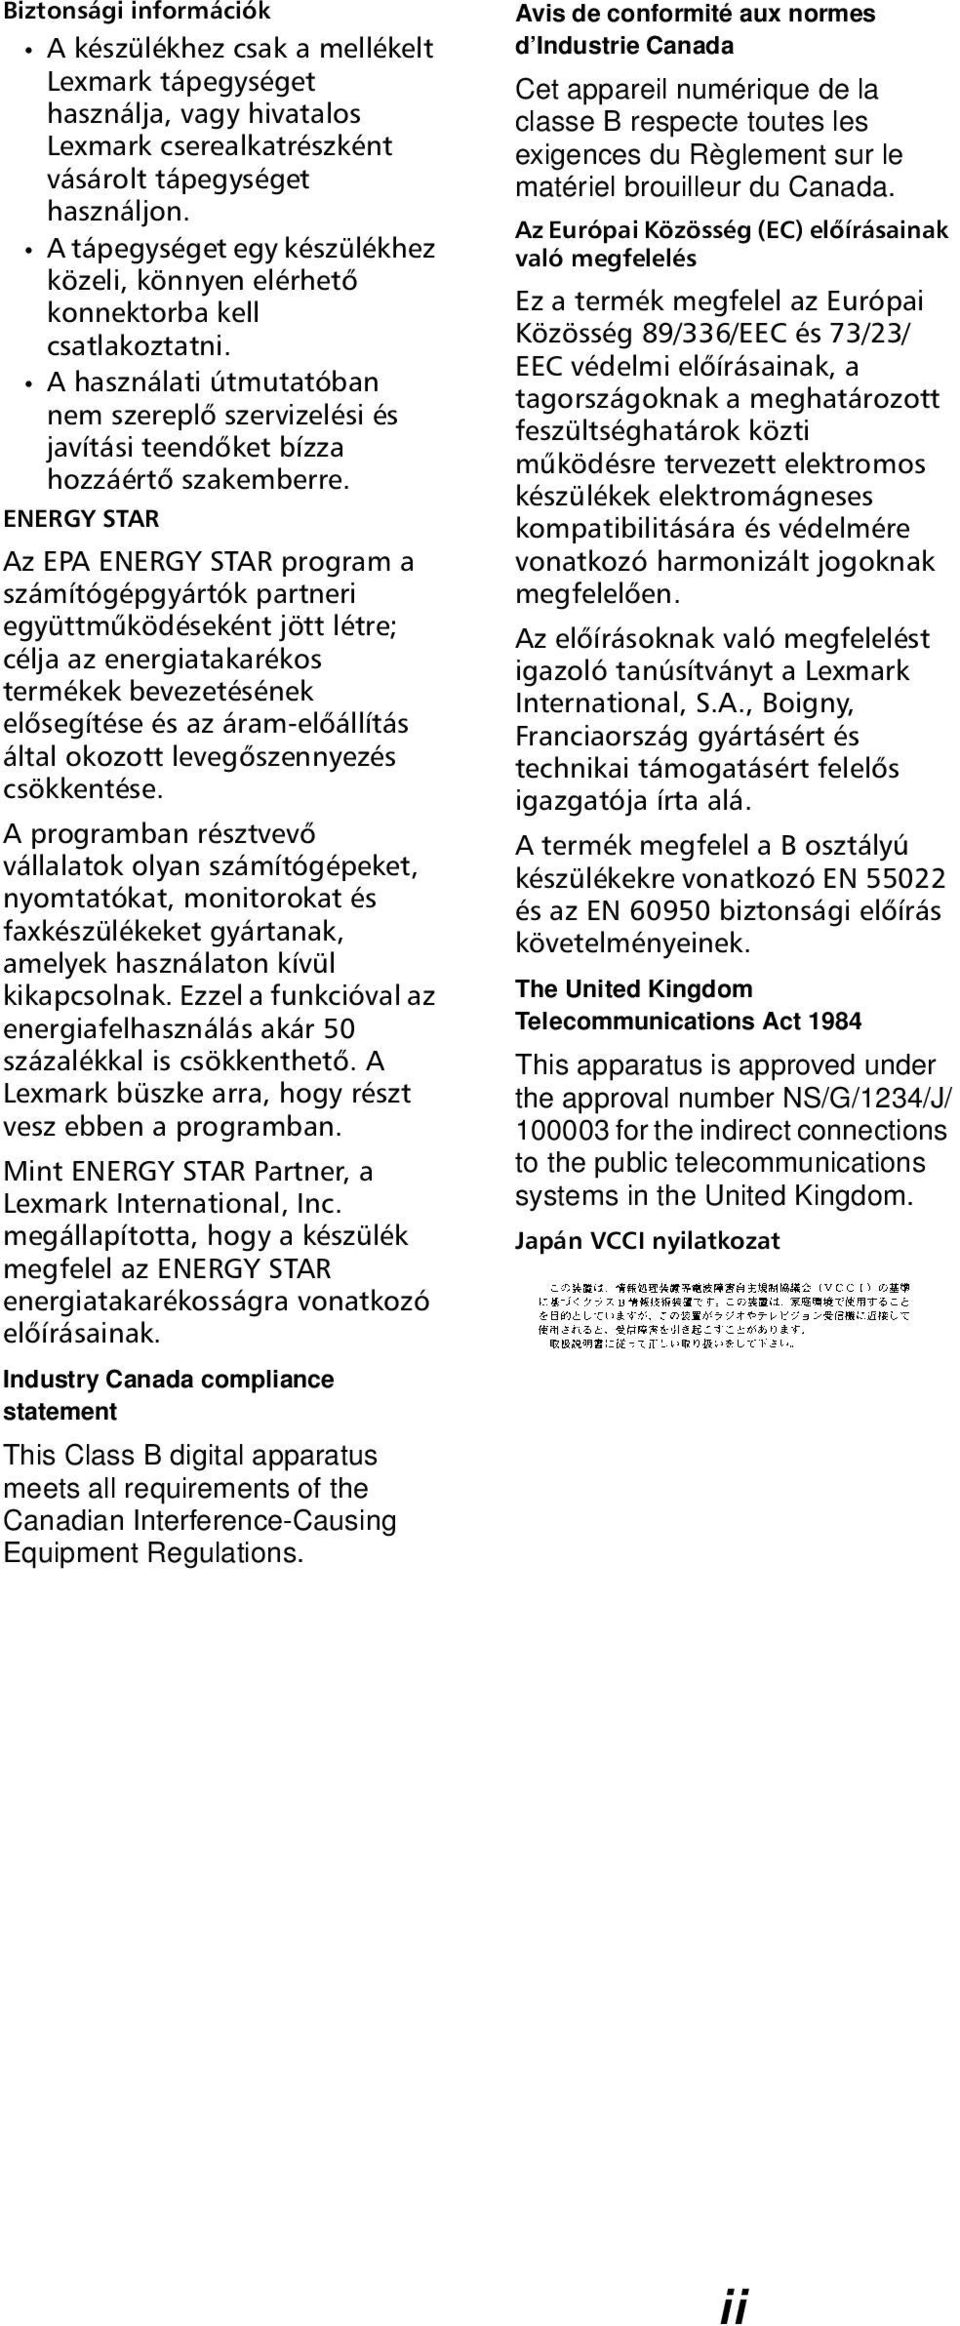 ENERGY STAR Az EPA ENERGY STAR program a számítógépgyártók partneri együttműködéseként jött létre; célja az energiatakarékos termékek bevezetésének elősegítése és az áram-előállítás által okozott